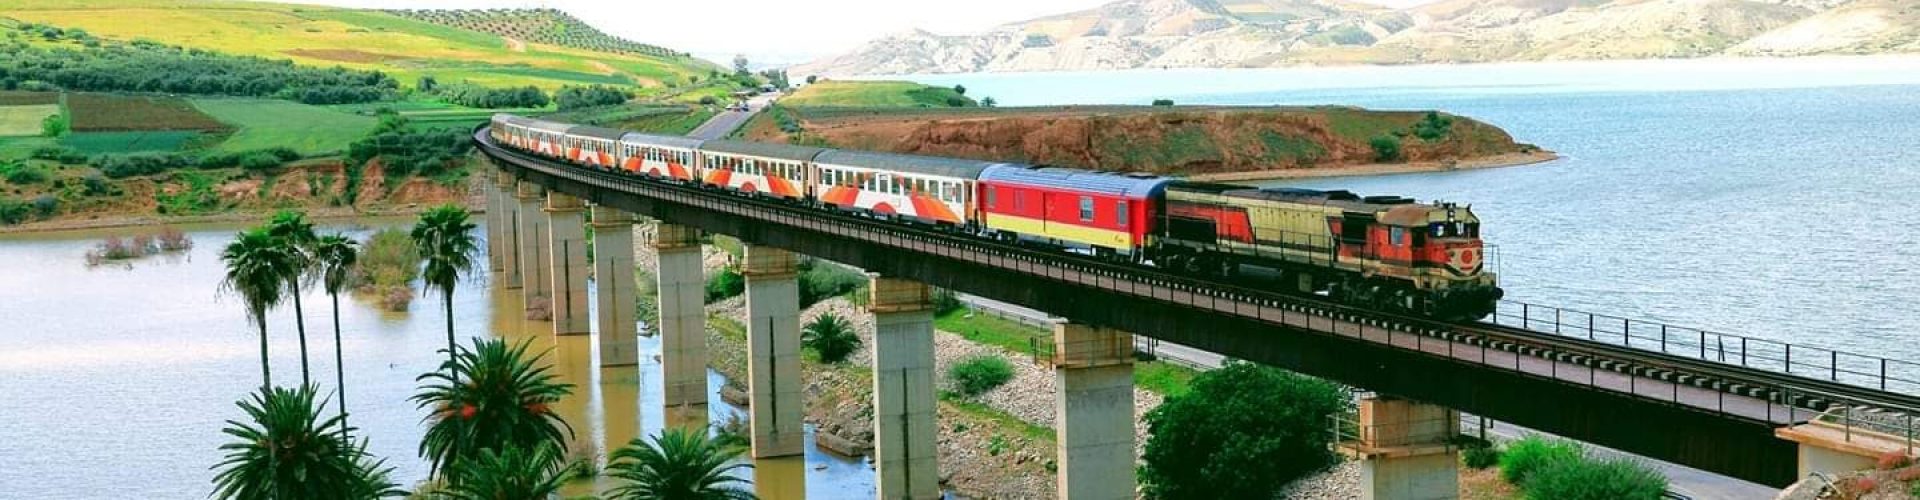 train in Morocco